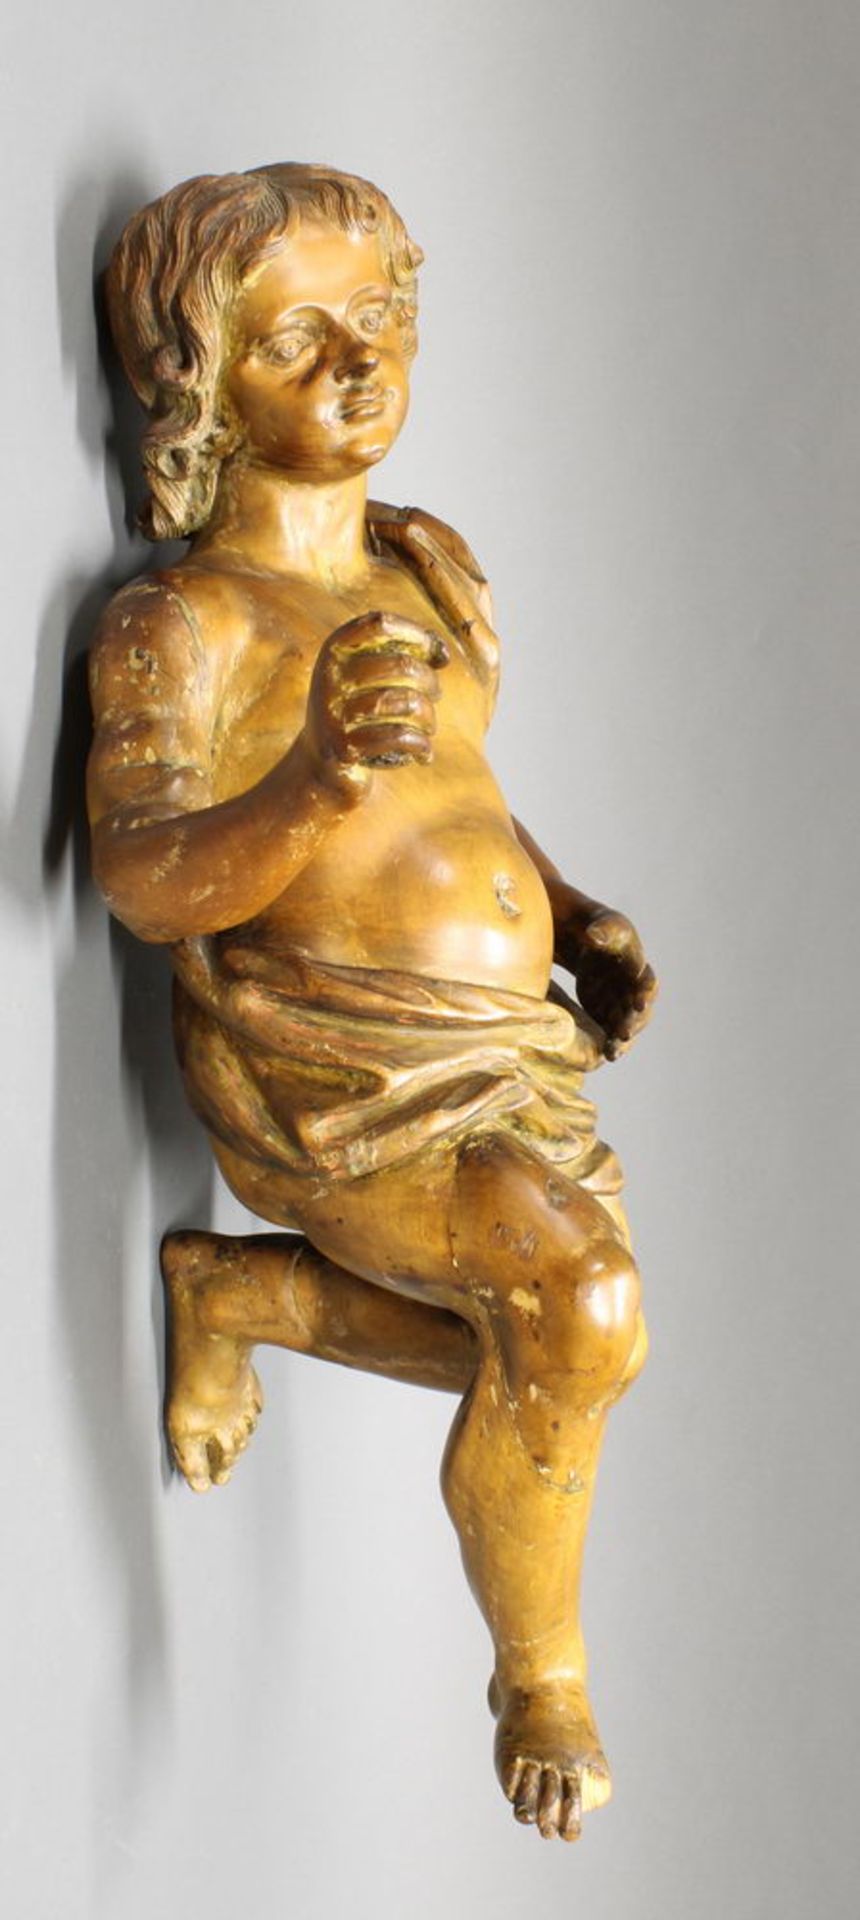 Skulptur, Holz geschnitzt, "Putto", 18./19. Jh., abgelaugt, 80 cm hoch, ein Finger und eine Zehe fe - Image 3 of 4